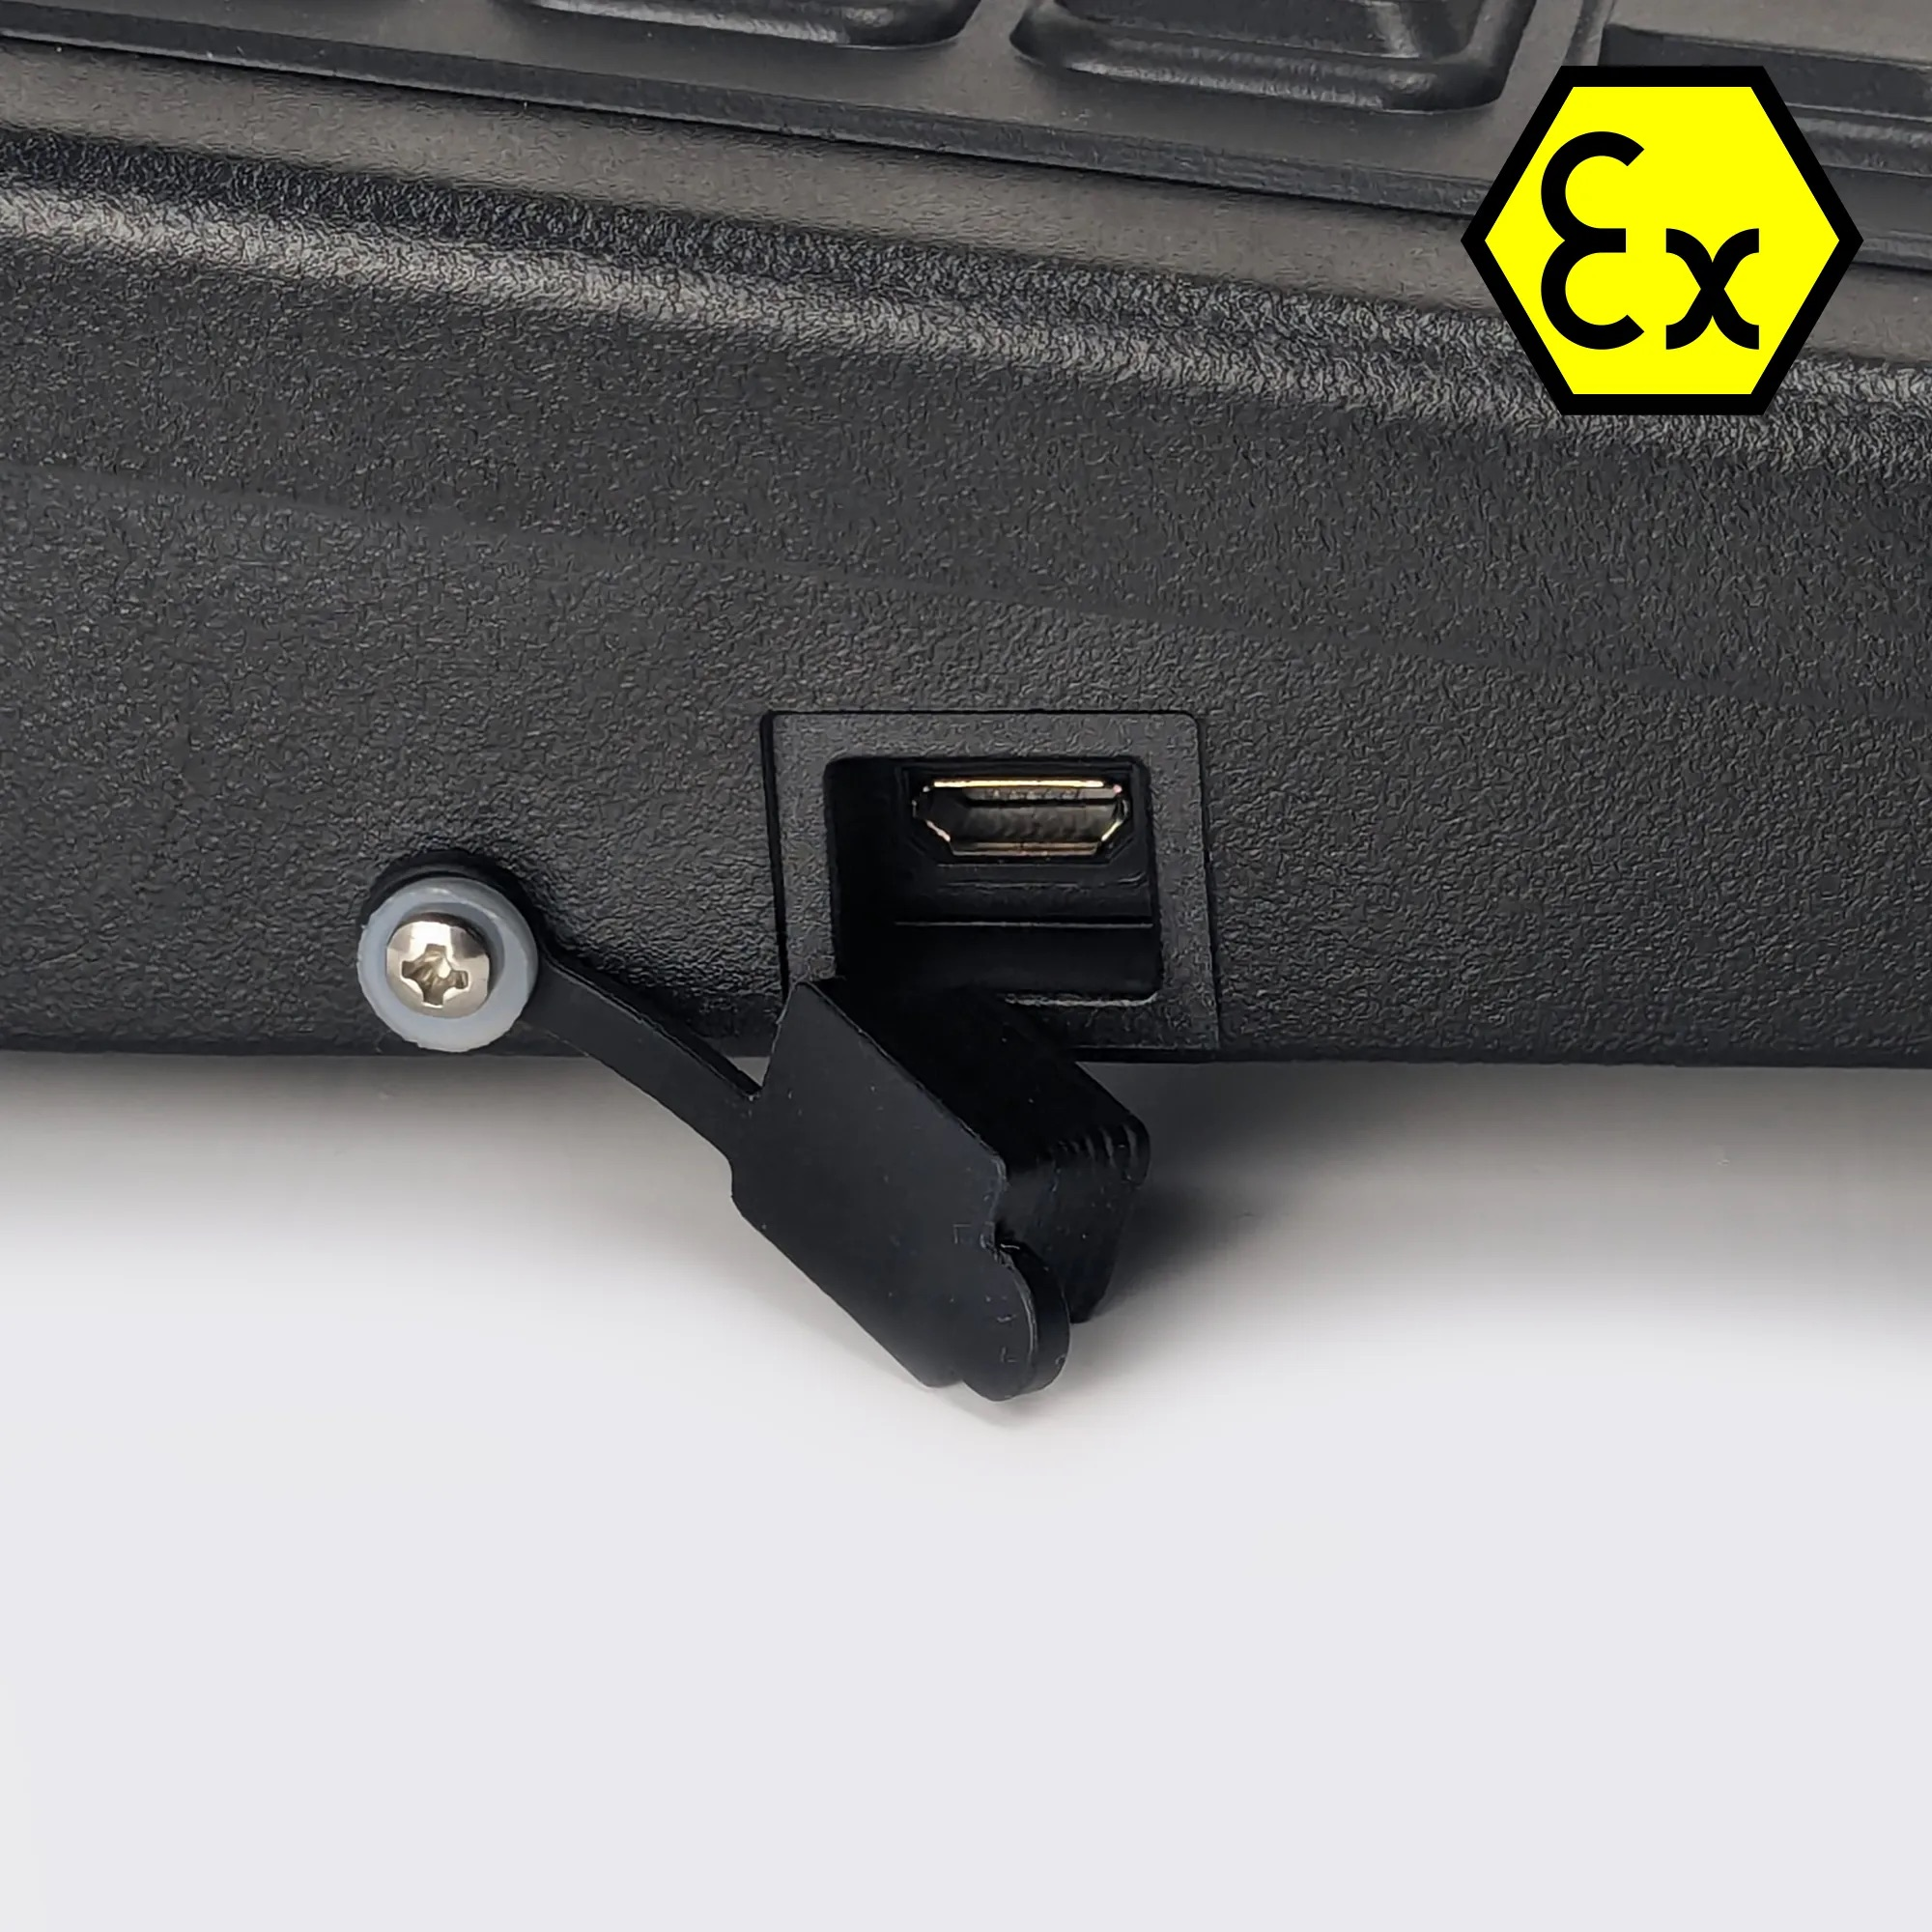 ATEX Intrinsically Safe Keyboard – Armadex BT-Key-02